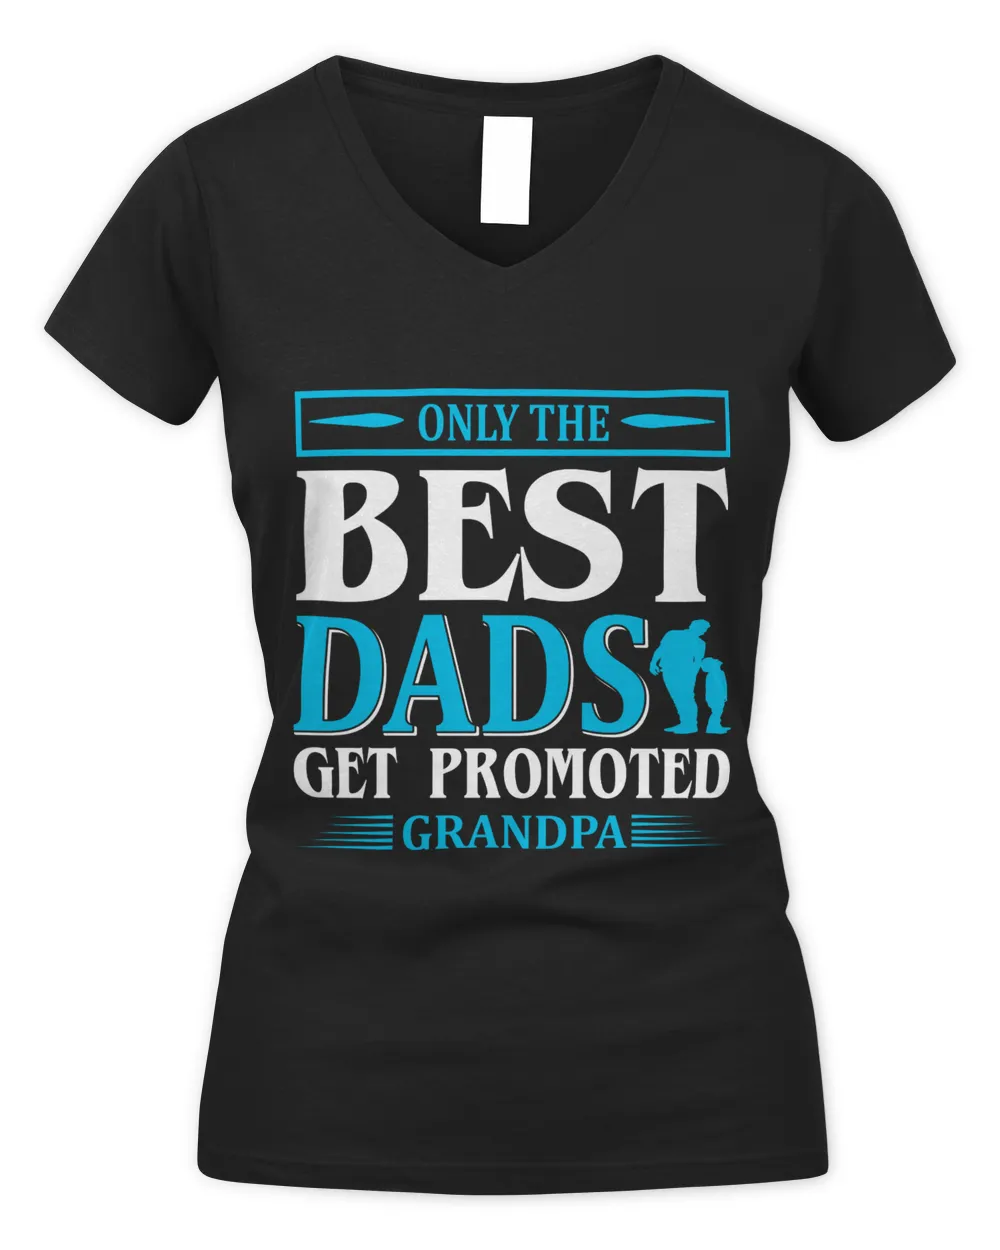 Father's Day Gifts, Father's Day Shirts, Father's Day Gift Ideas, Father's Day Gifts 2022, Gifts for Dad (52)